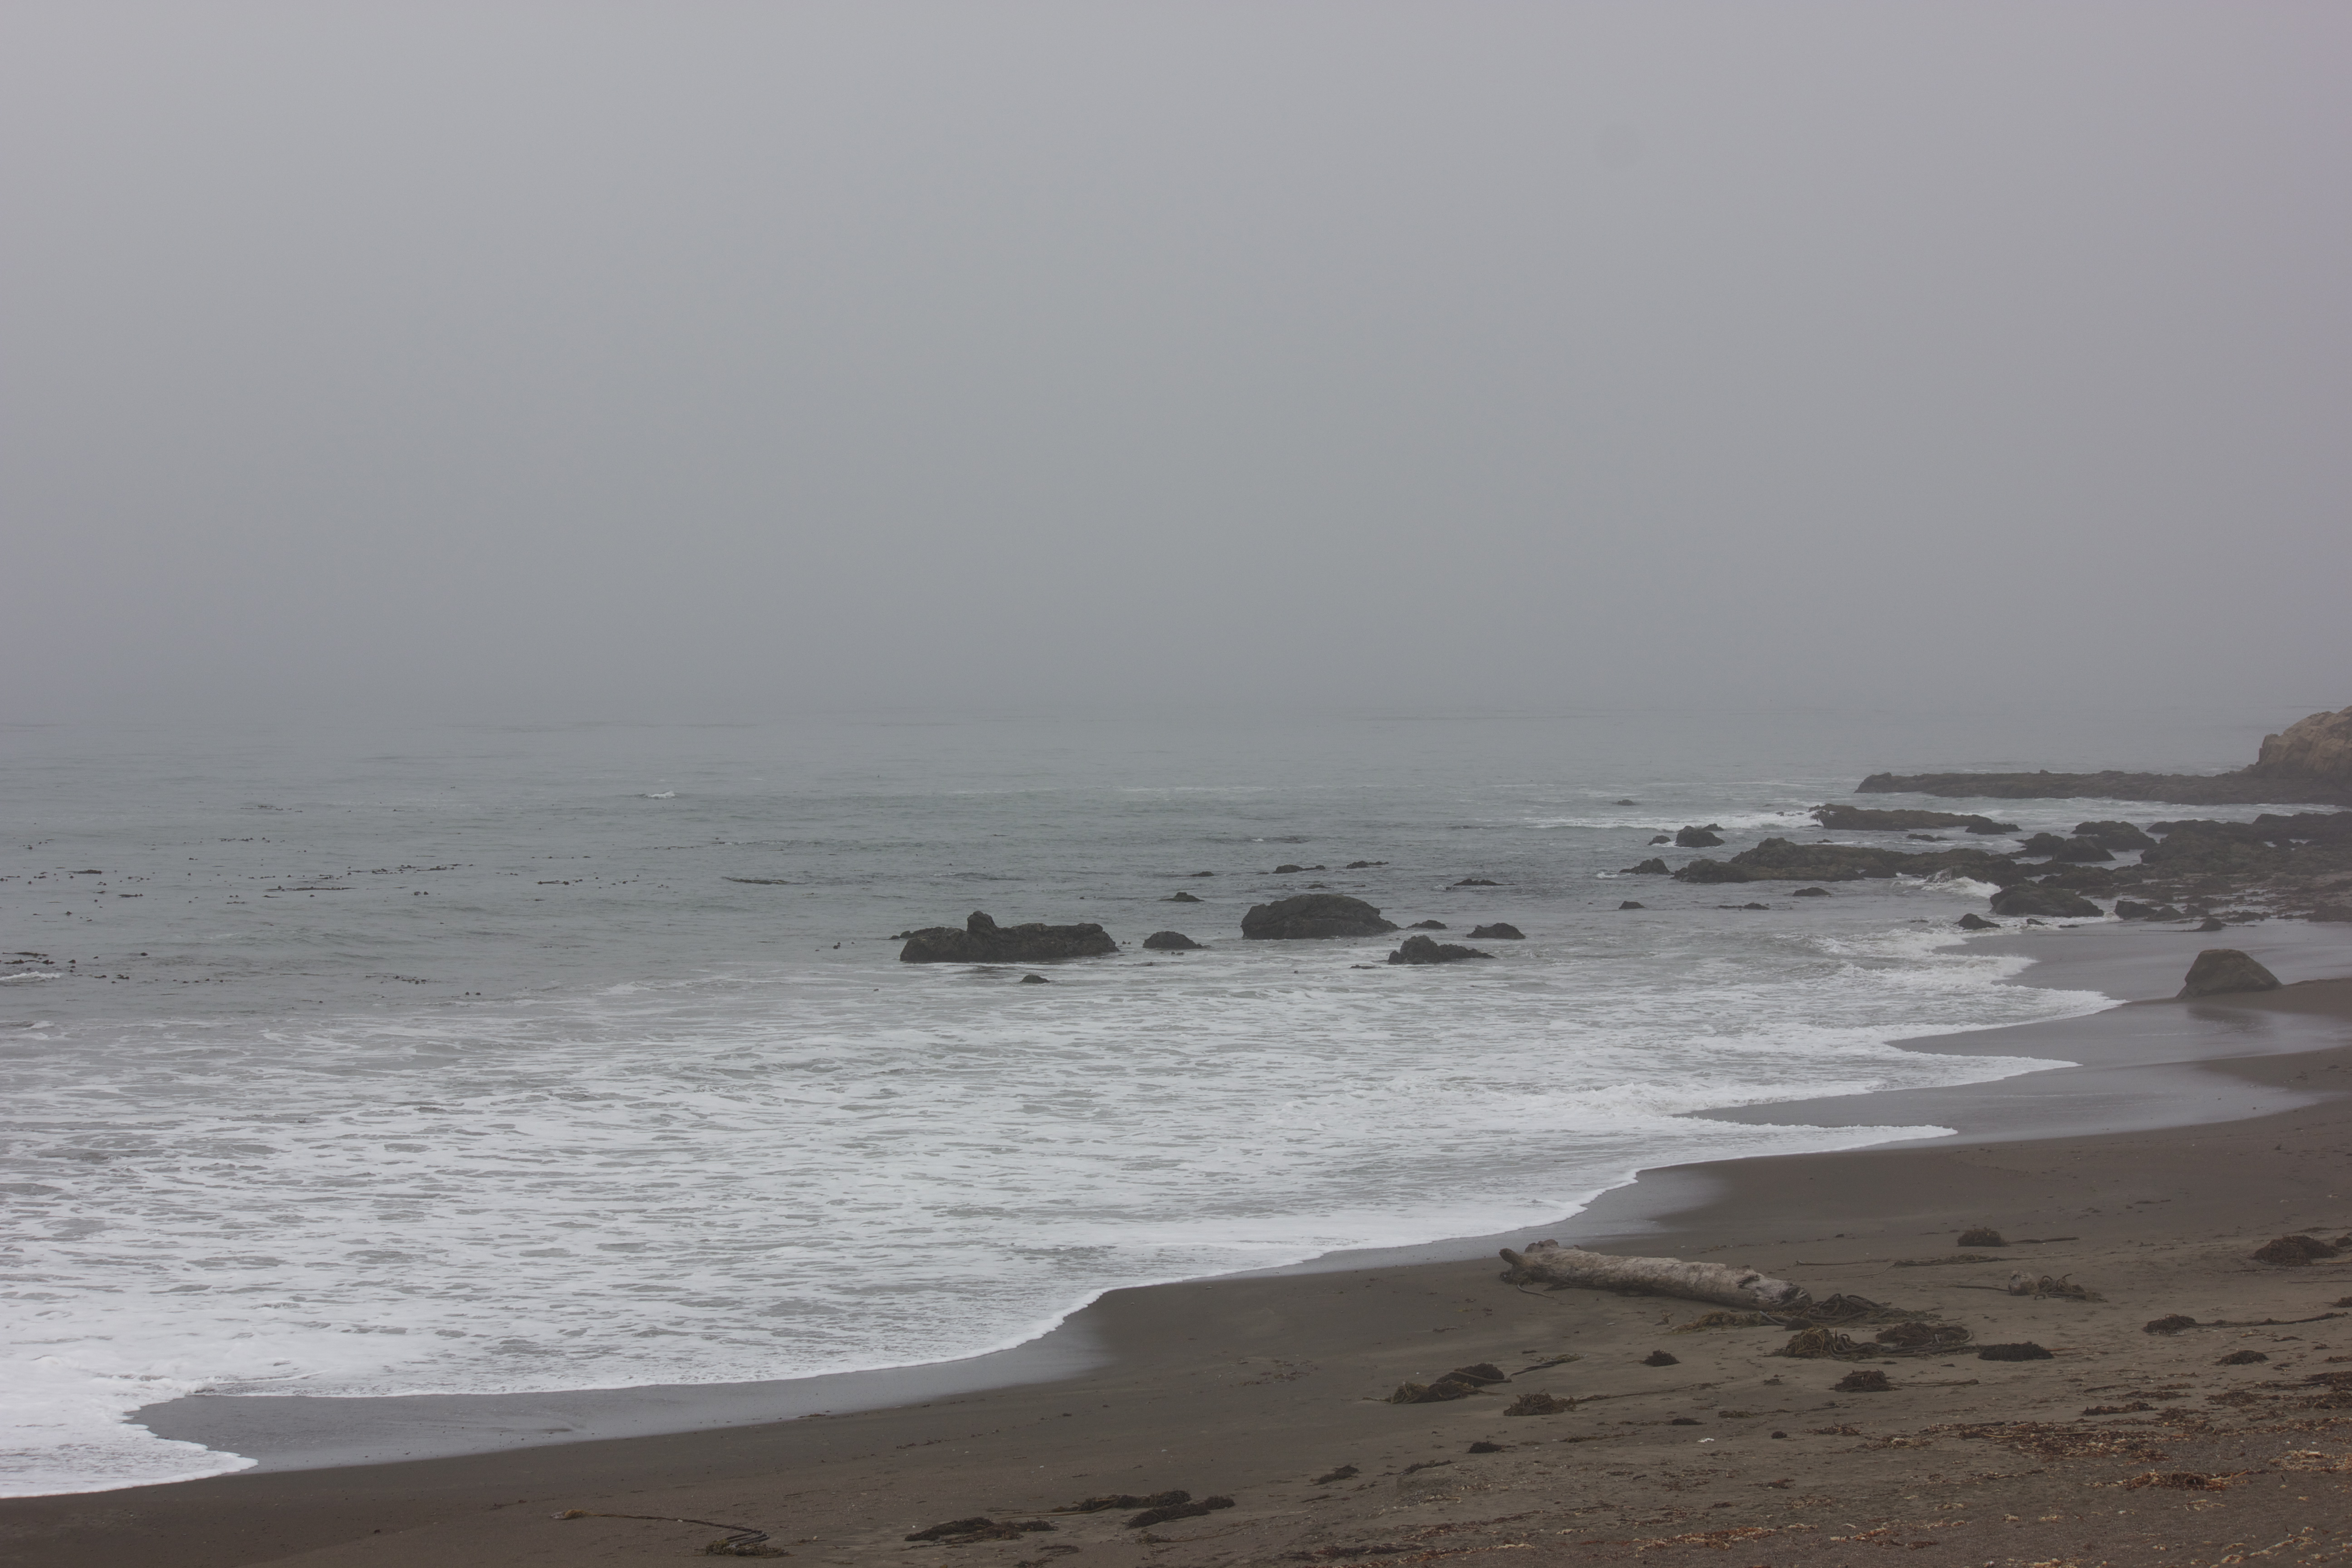 A foggy day on the rocky coast. 